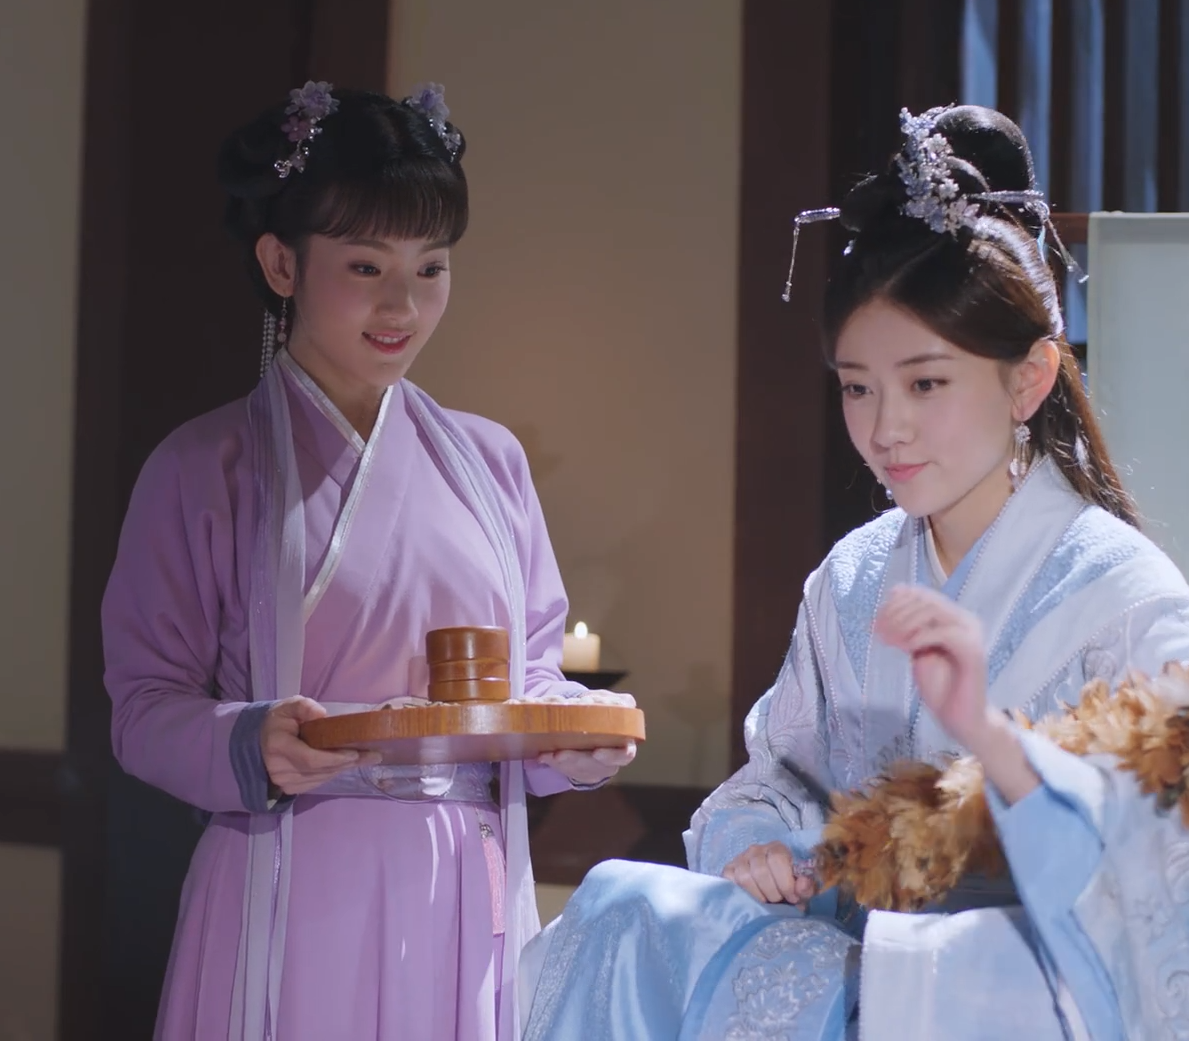 20181022 双世宠妃2 开播发布会 tencent ver 传说中42场吻戏的高甜剧 哈哈哈哈_哔哩哔哩_bilibili